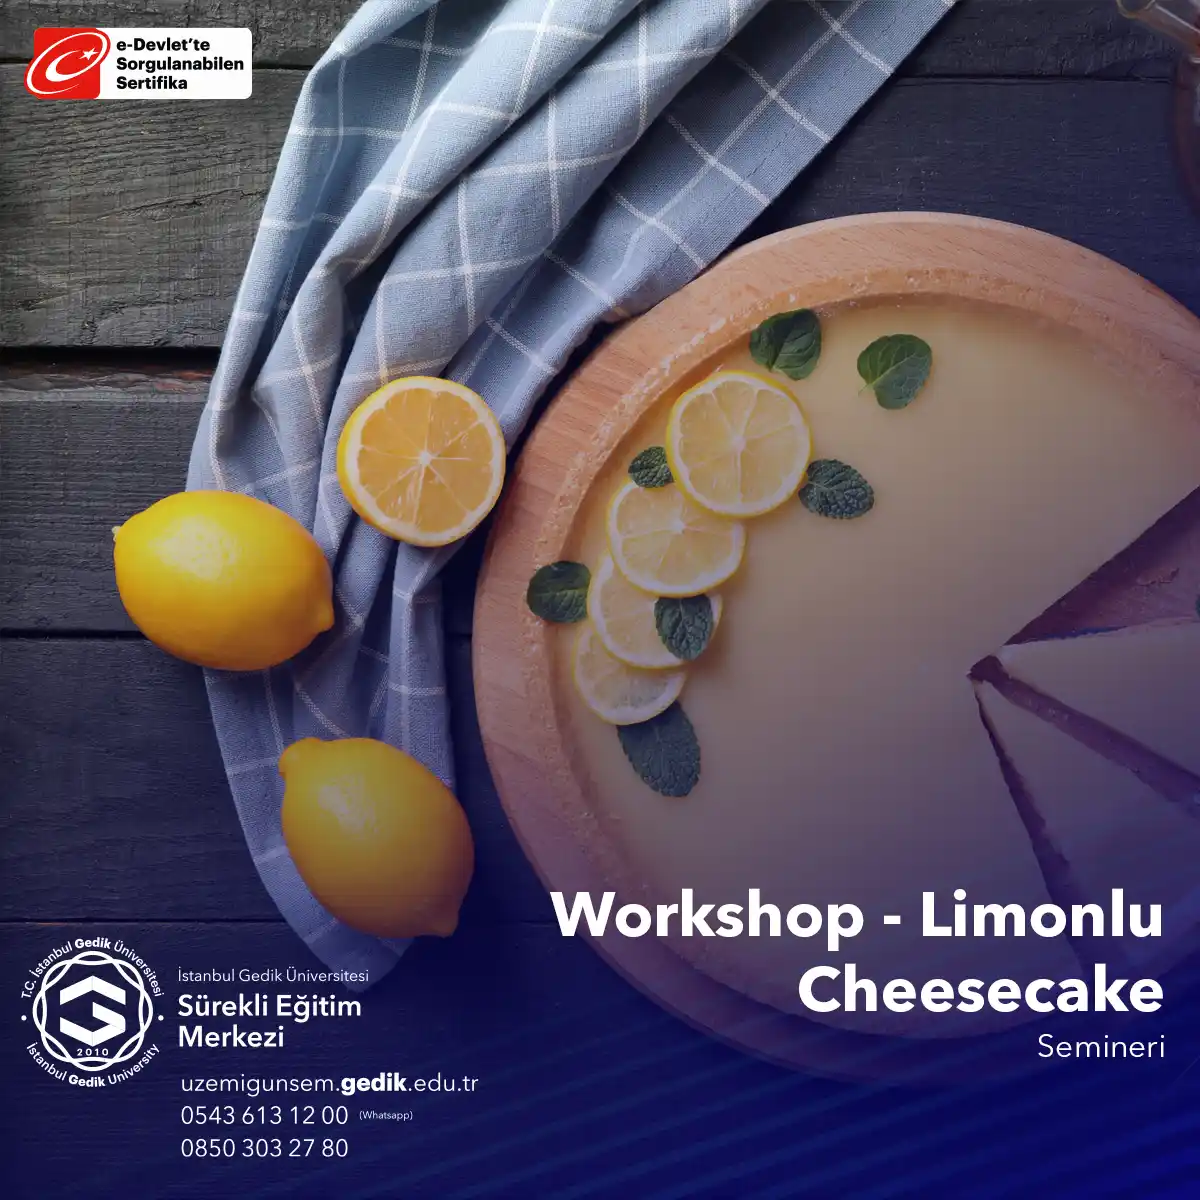 Limonlu Cheesecake Yapımı Workshop Semineri